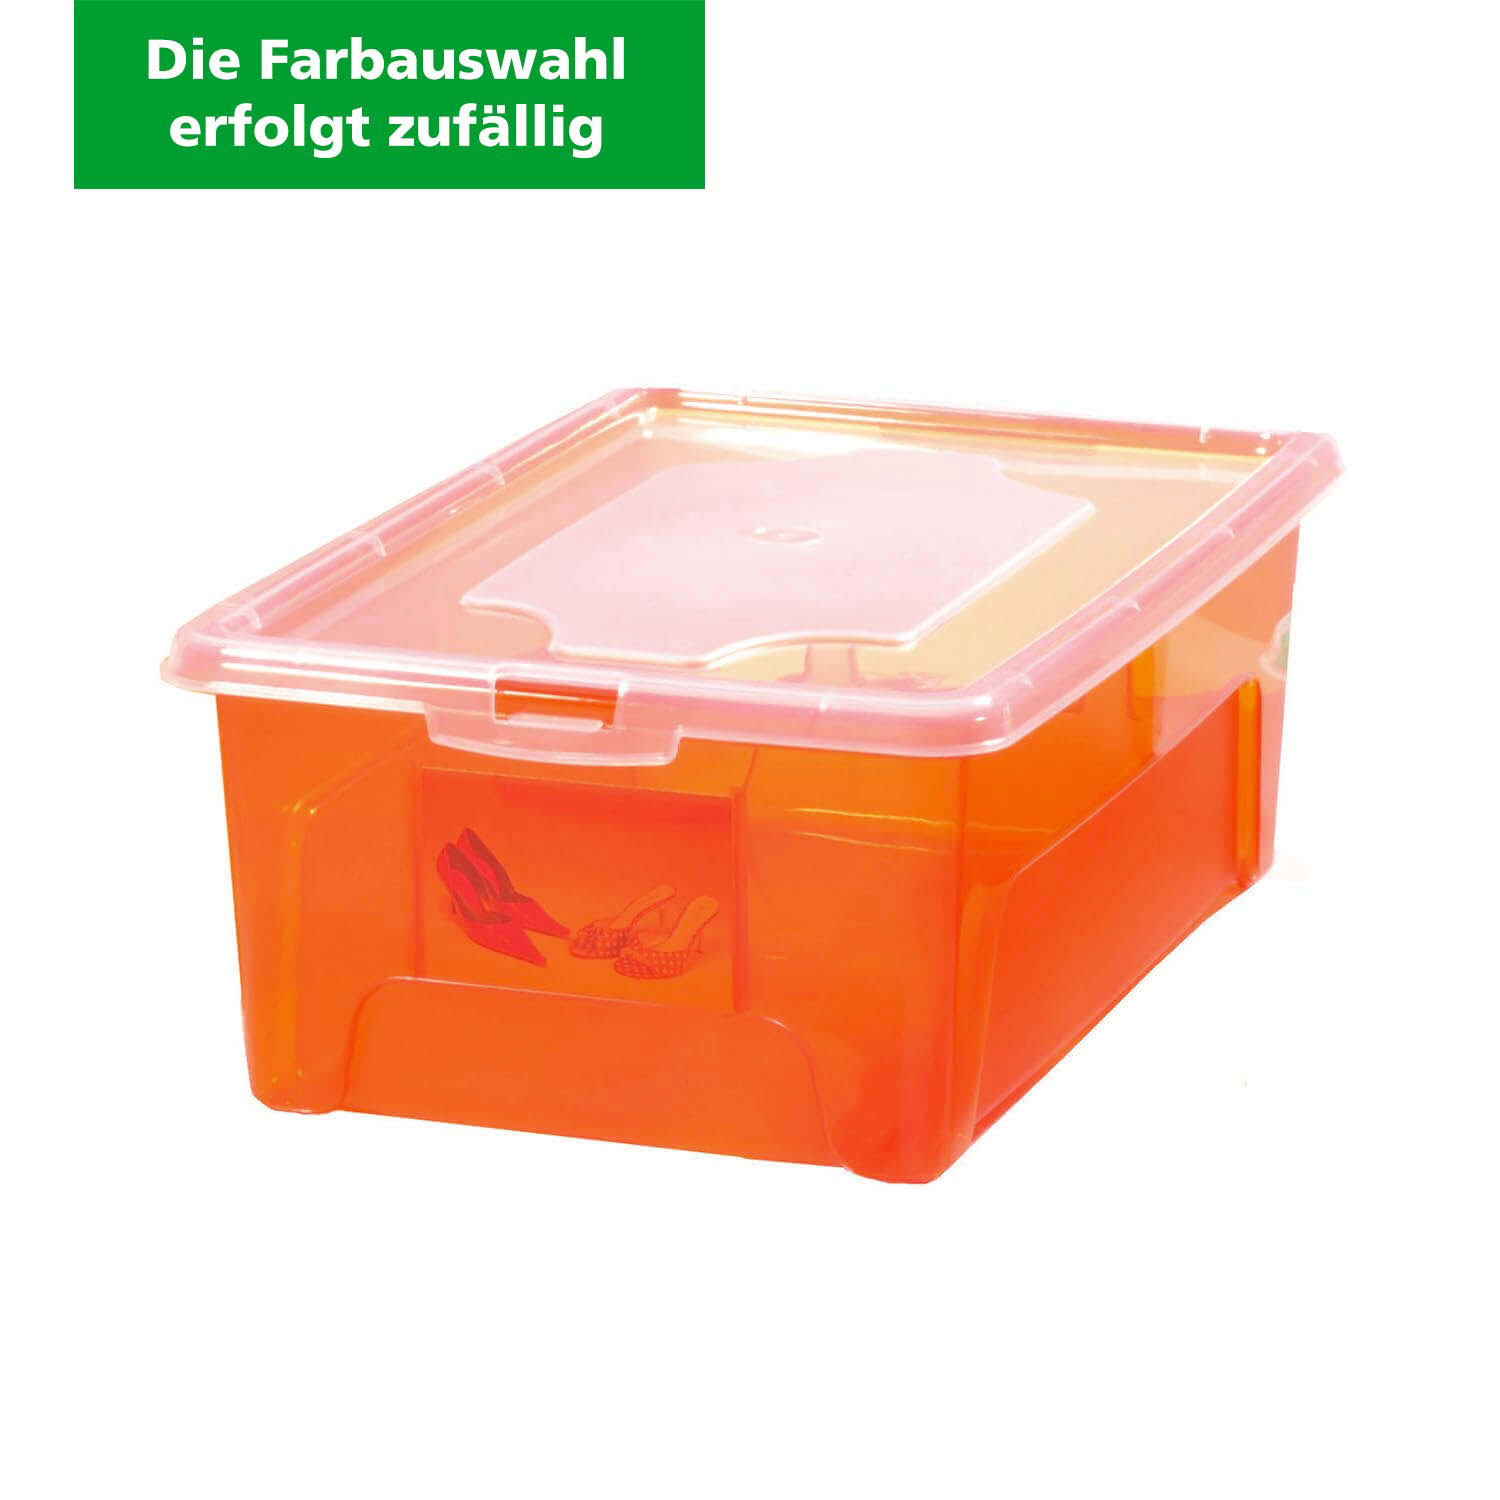 Aufbewahrungsbox "Easybox" 2 L, Kunststoffbox (Die Farbauswahl erfolgt zufällig)